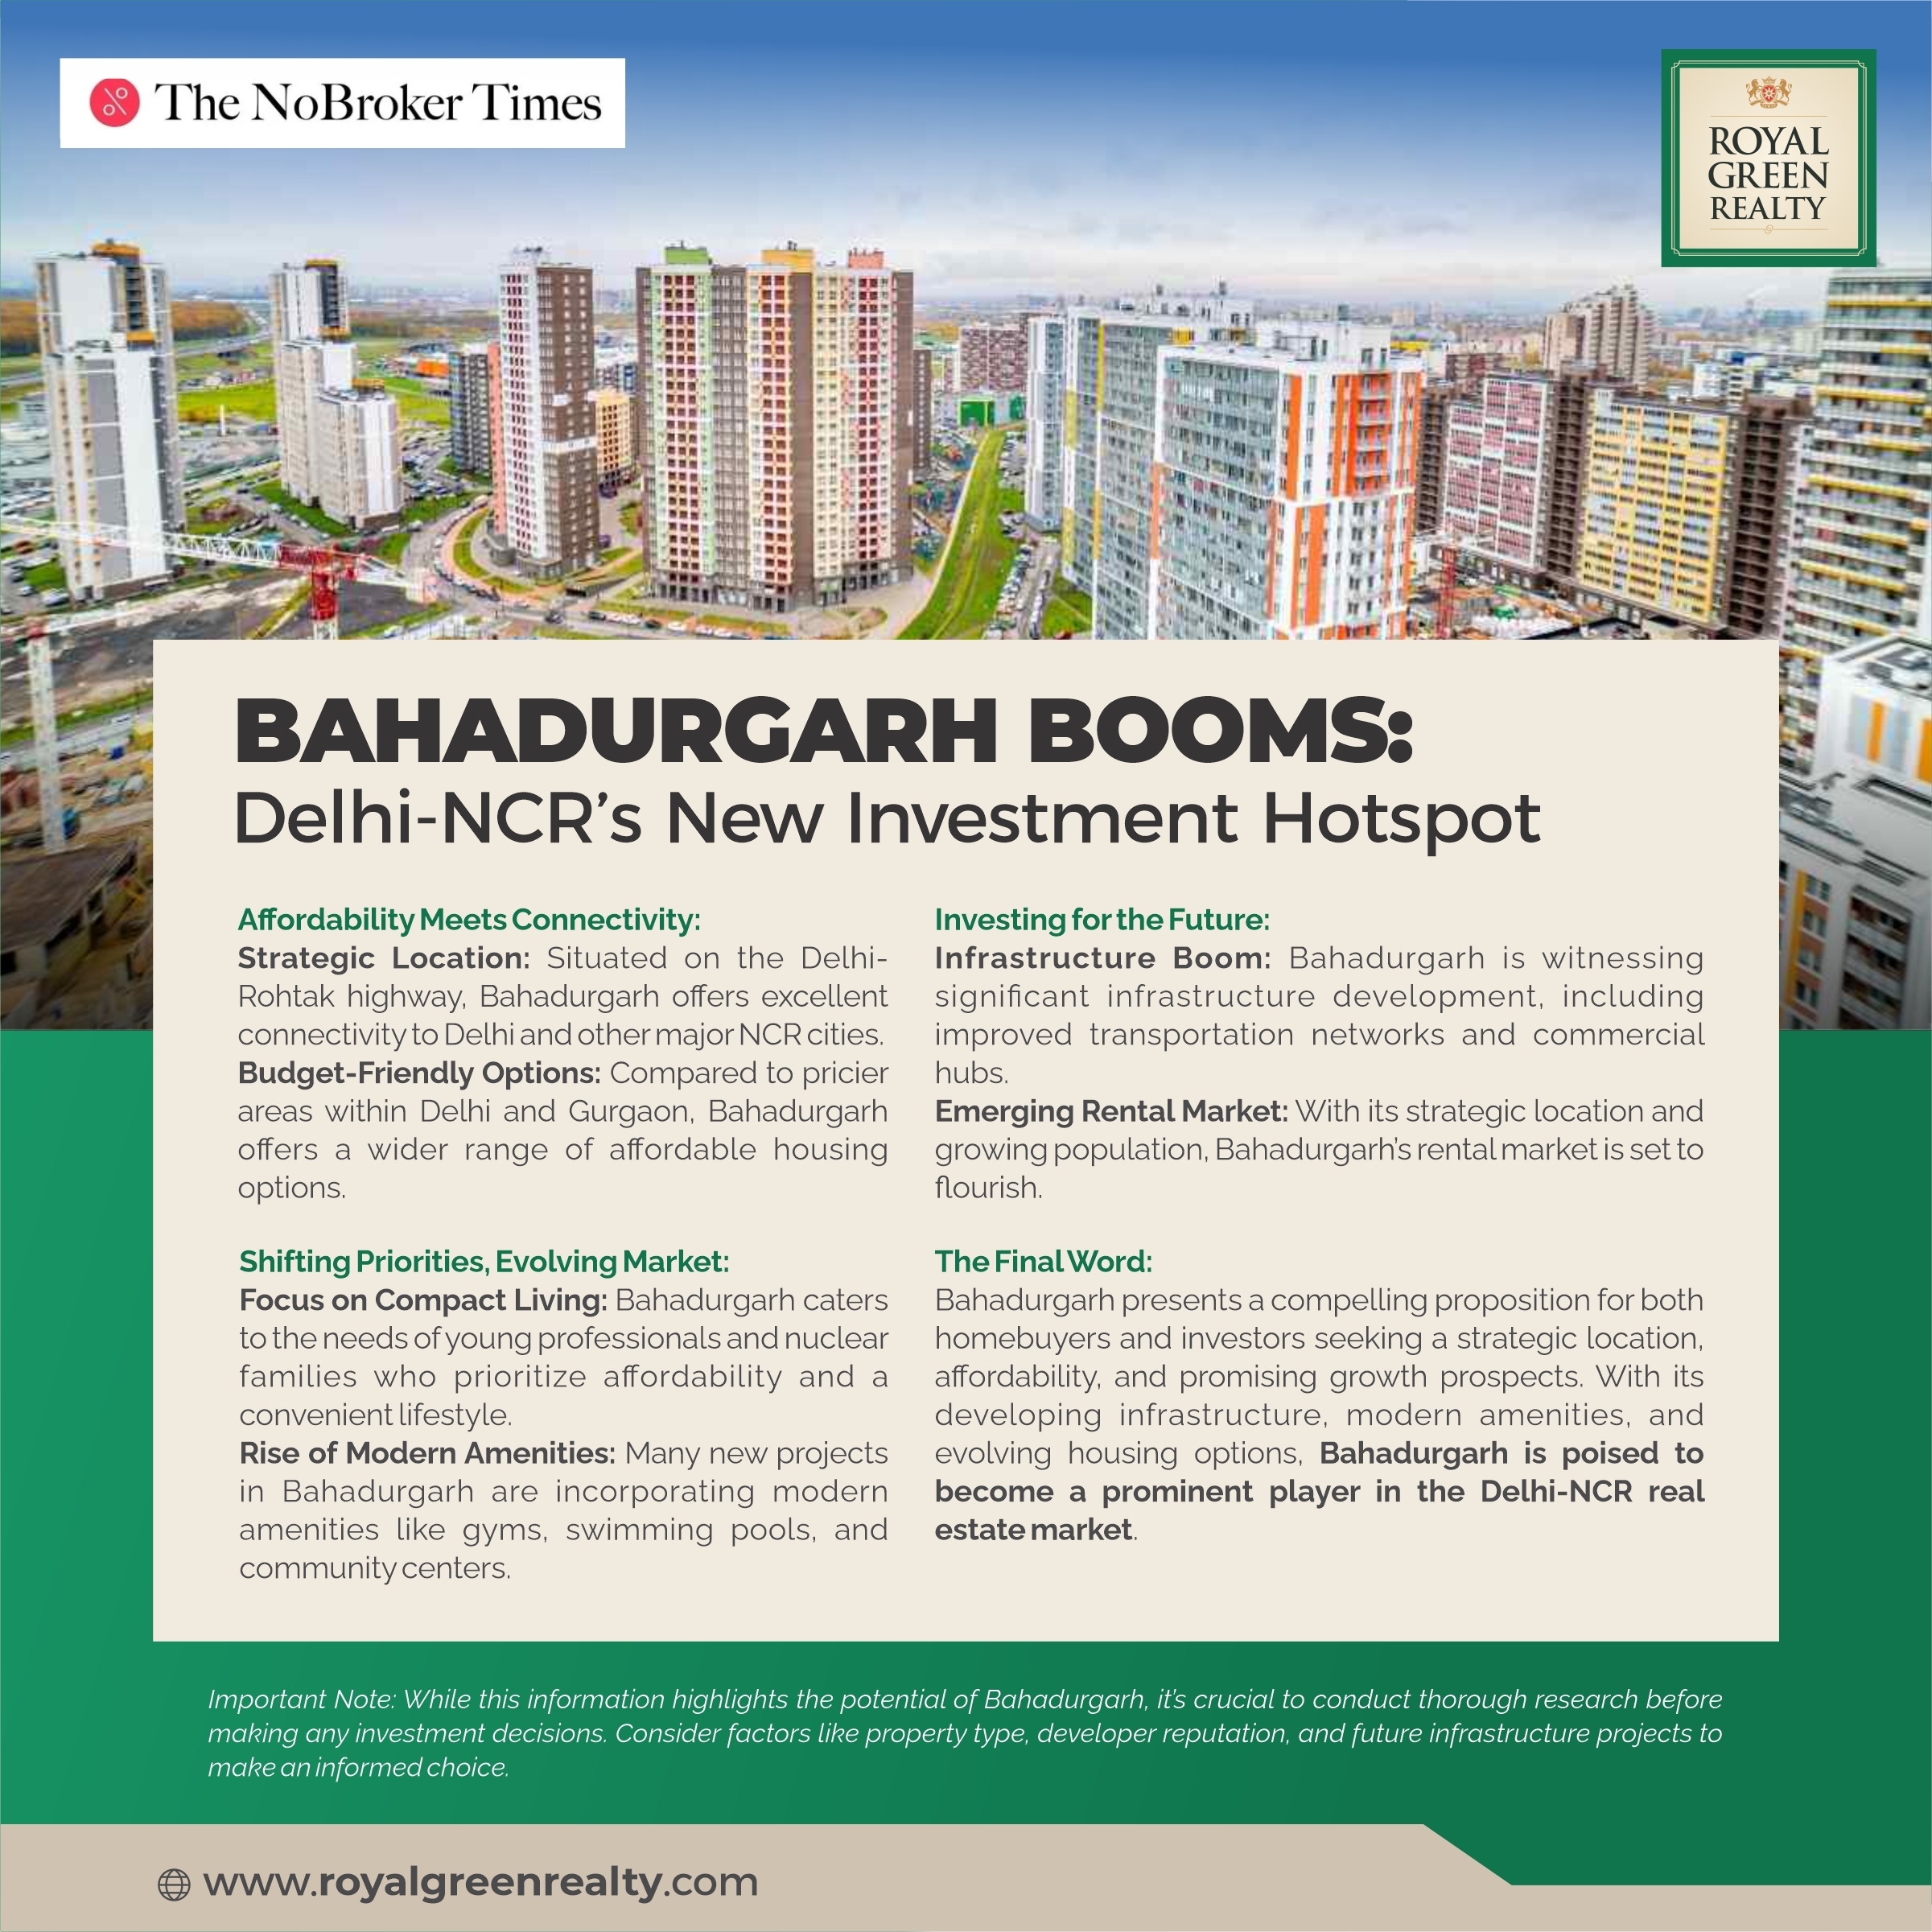 Bahadurgarh booms: Delhi NCR's New investment hotspot